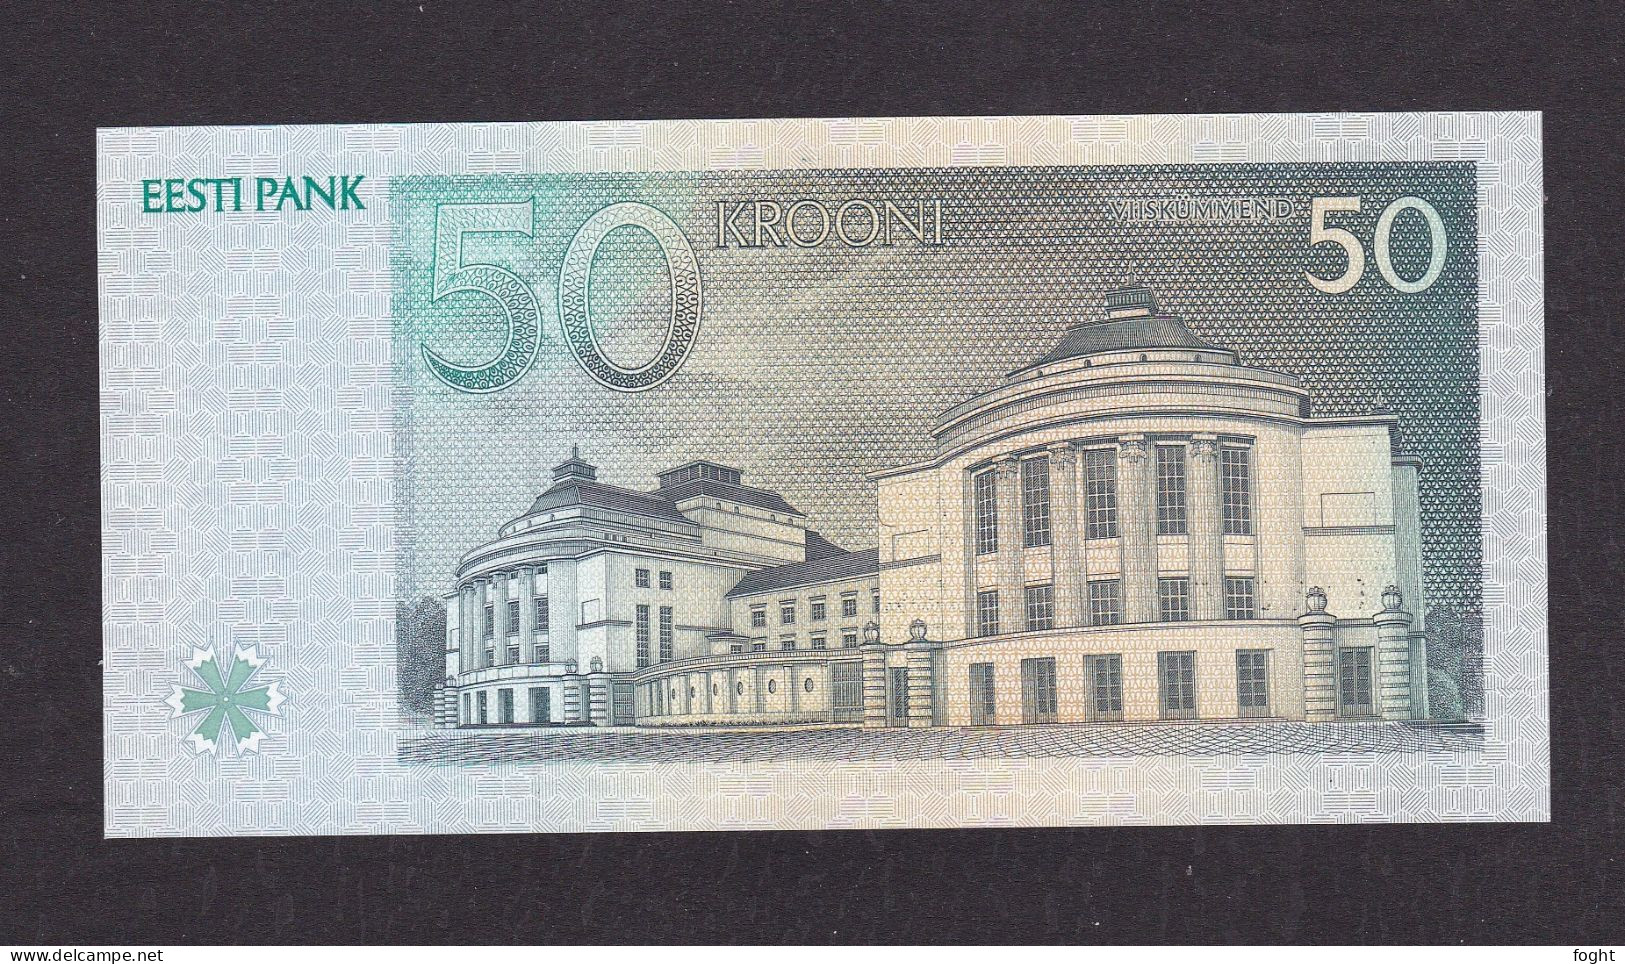 1994 Estonia Bank Of Estonia Banknote 50 Krooni,P#78A - Estonia